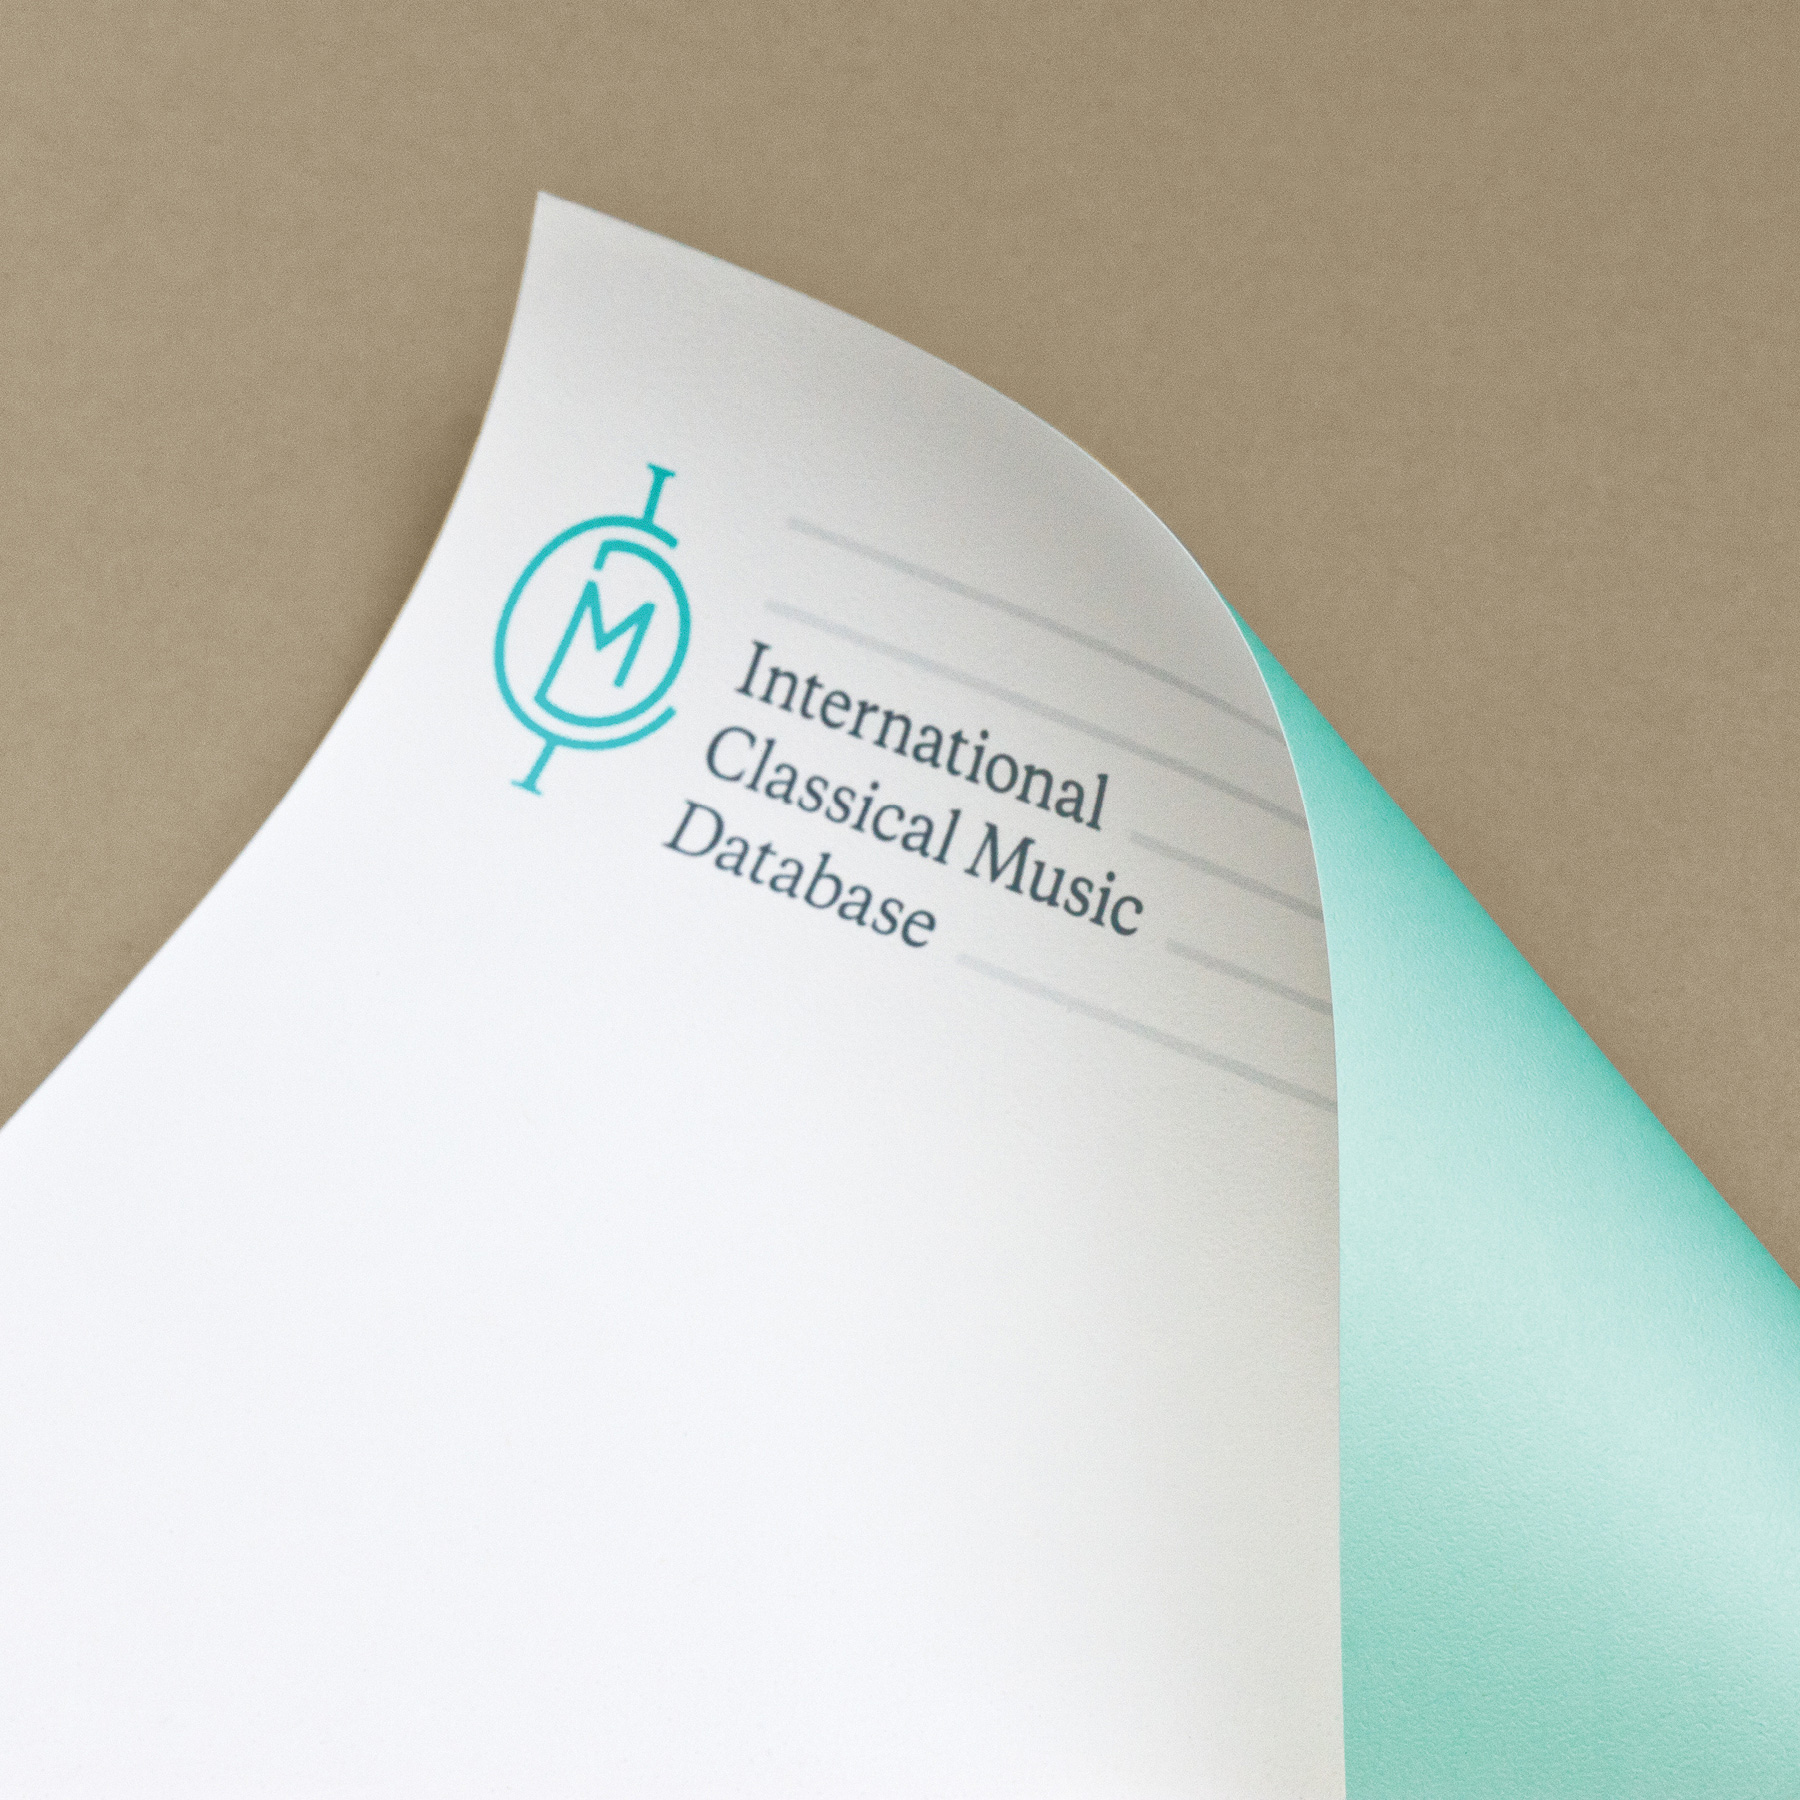 Branded letterhead; International Classical Music Database.